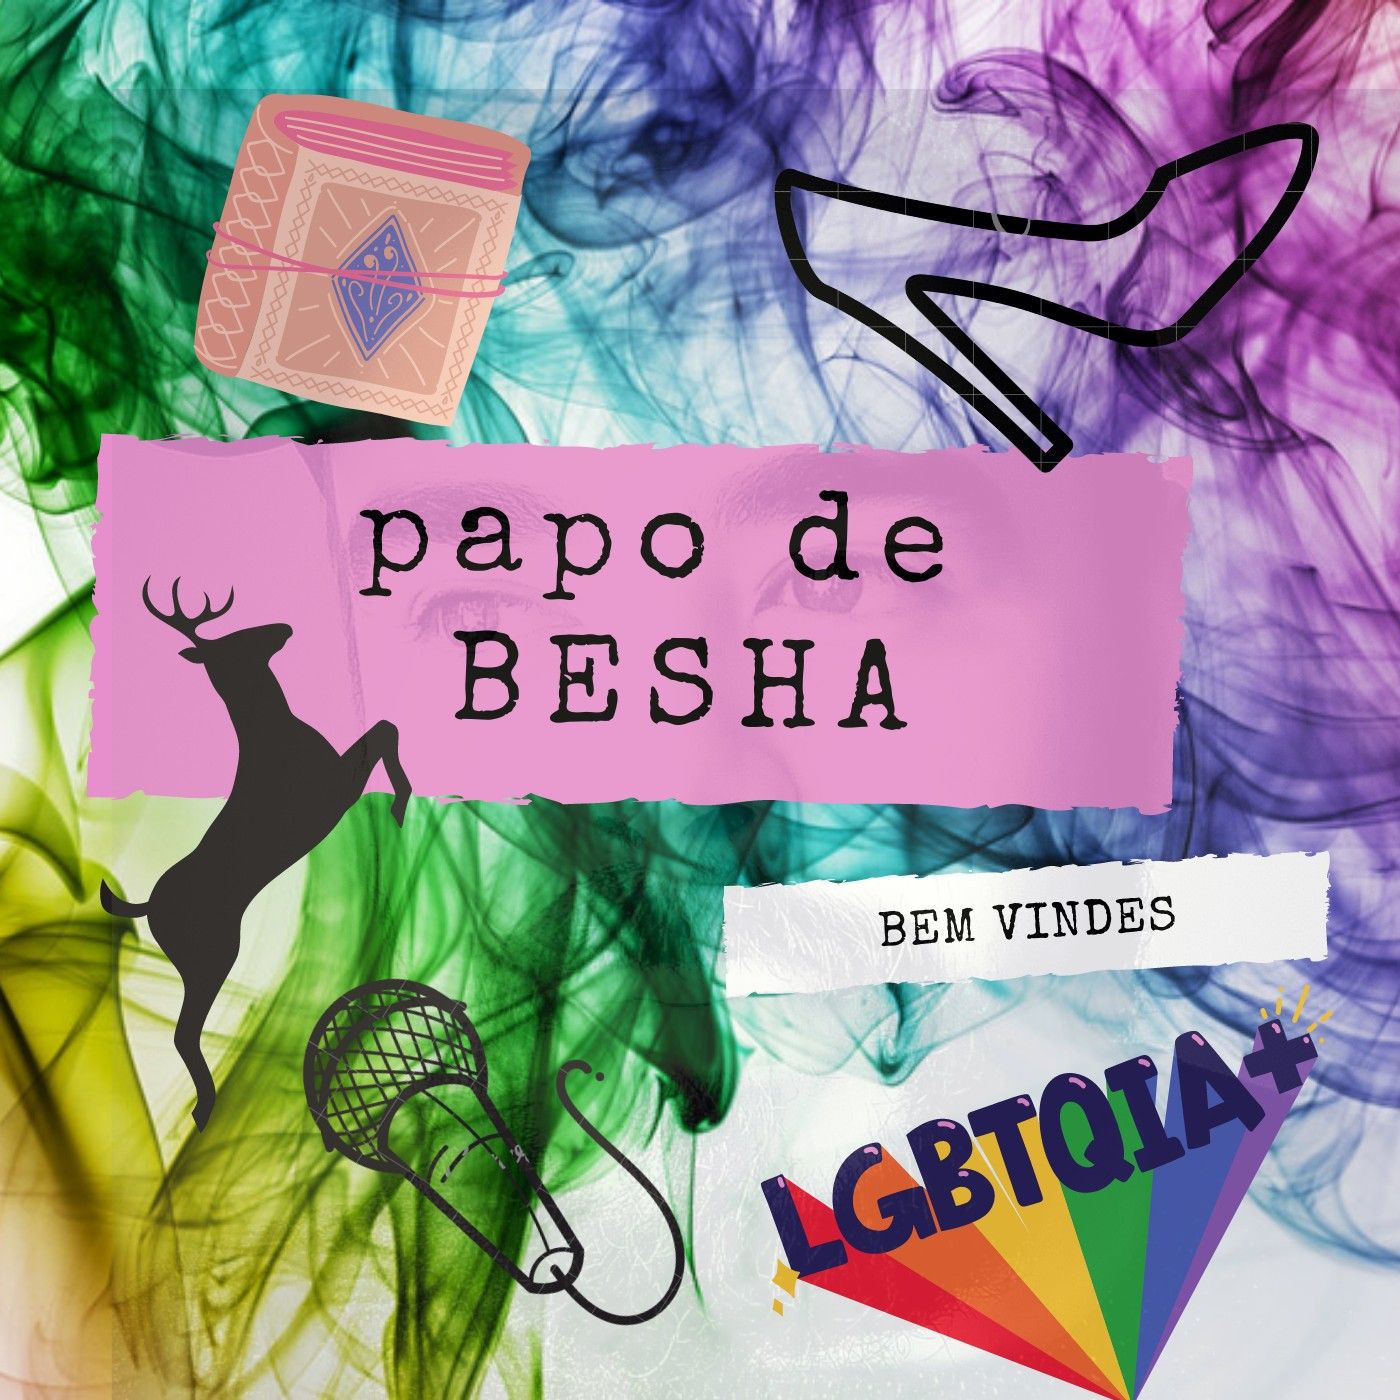 PAPO DE BESHA